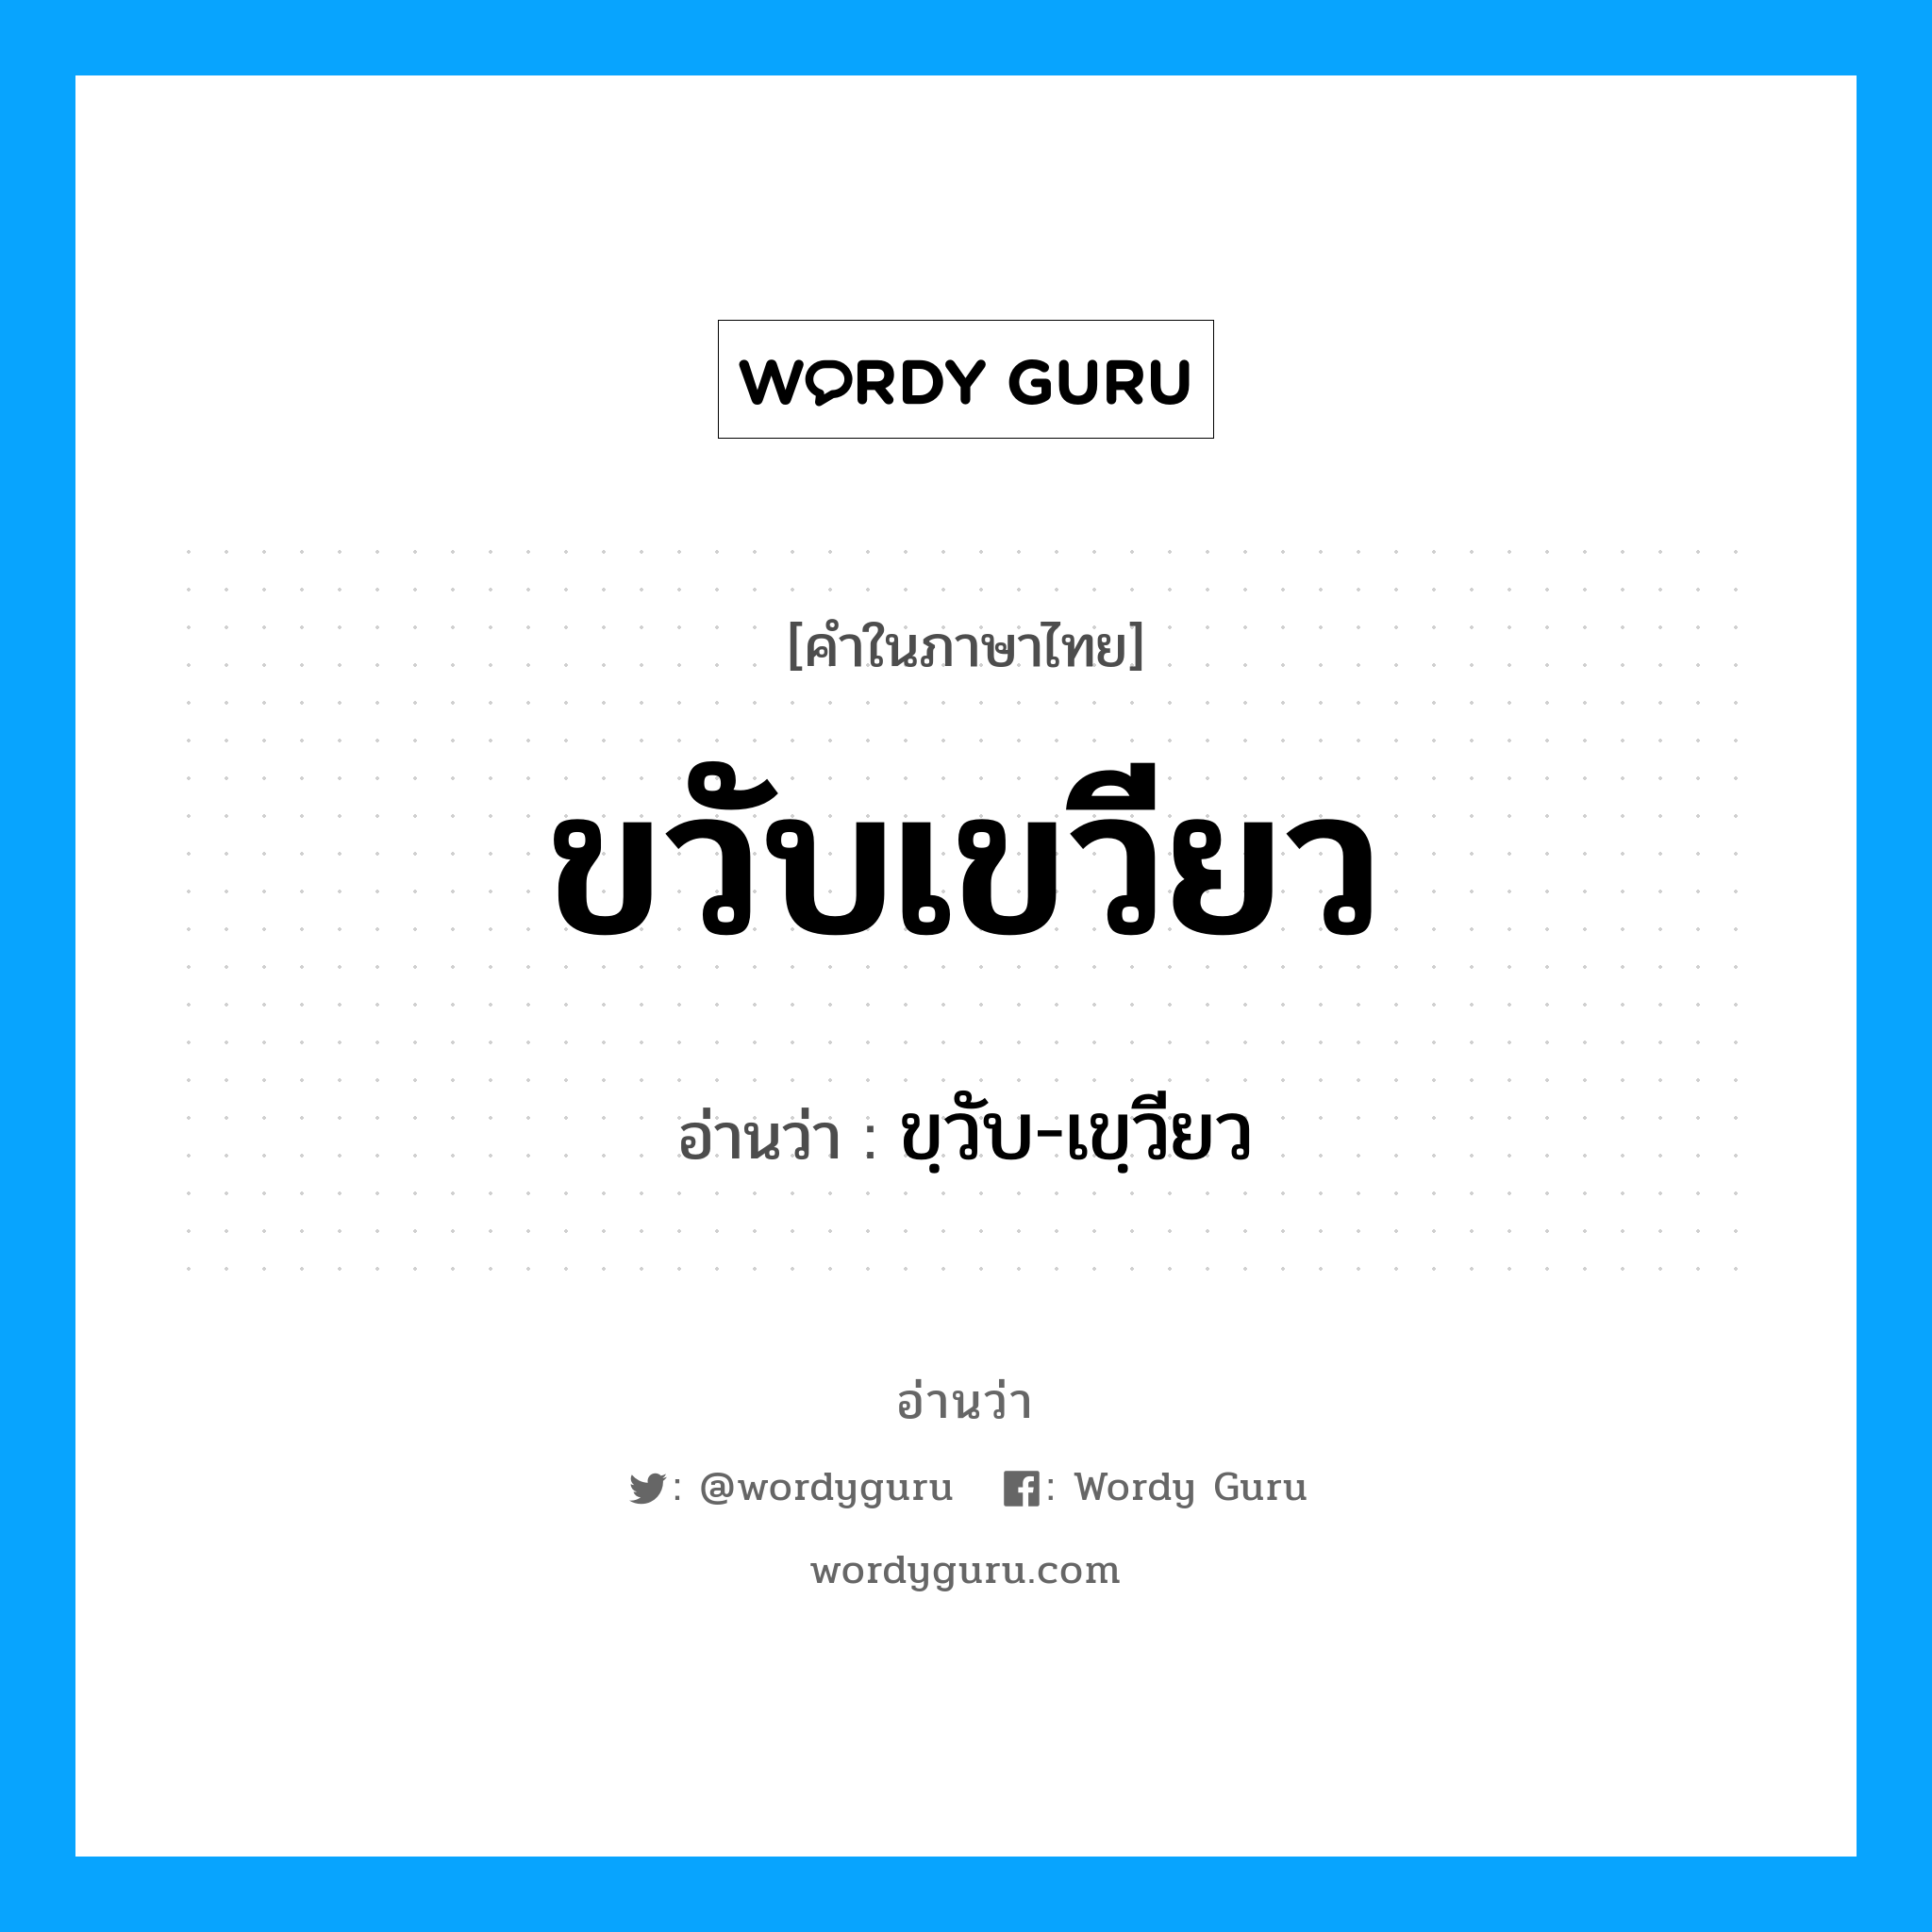 ขวับเขวียว อ่านว่า?, คำในภาษาไทย ขวับเขวียว อ่านว่า ขฺวับ-เขฺวียว